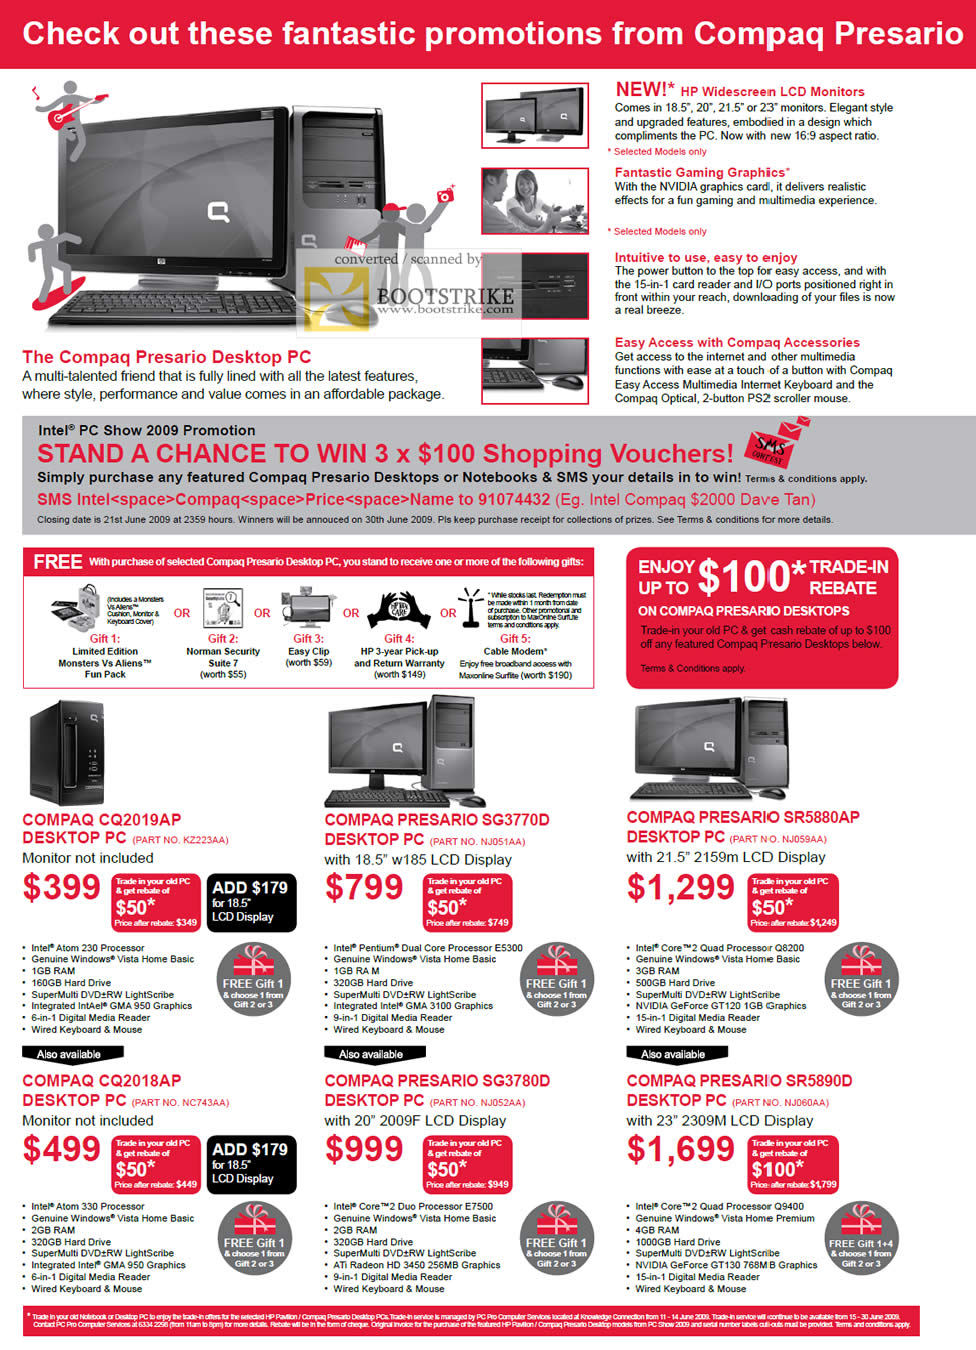 PC Show 2009 price list image brochure of Compaq Presario Desktop CQ2019AP SG3770D SR5880AP CQ2018AP SG3780D SR5890D